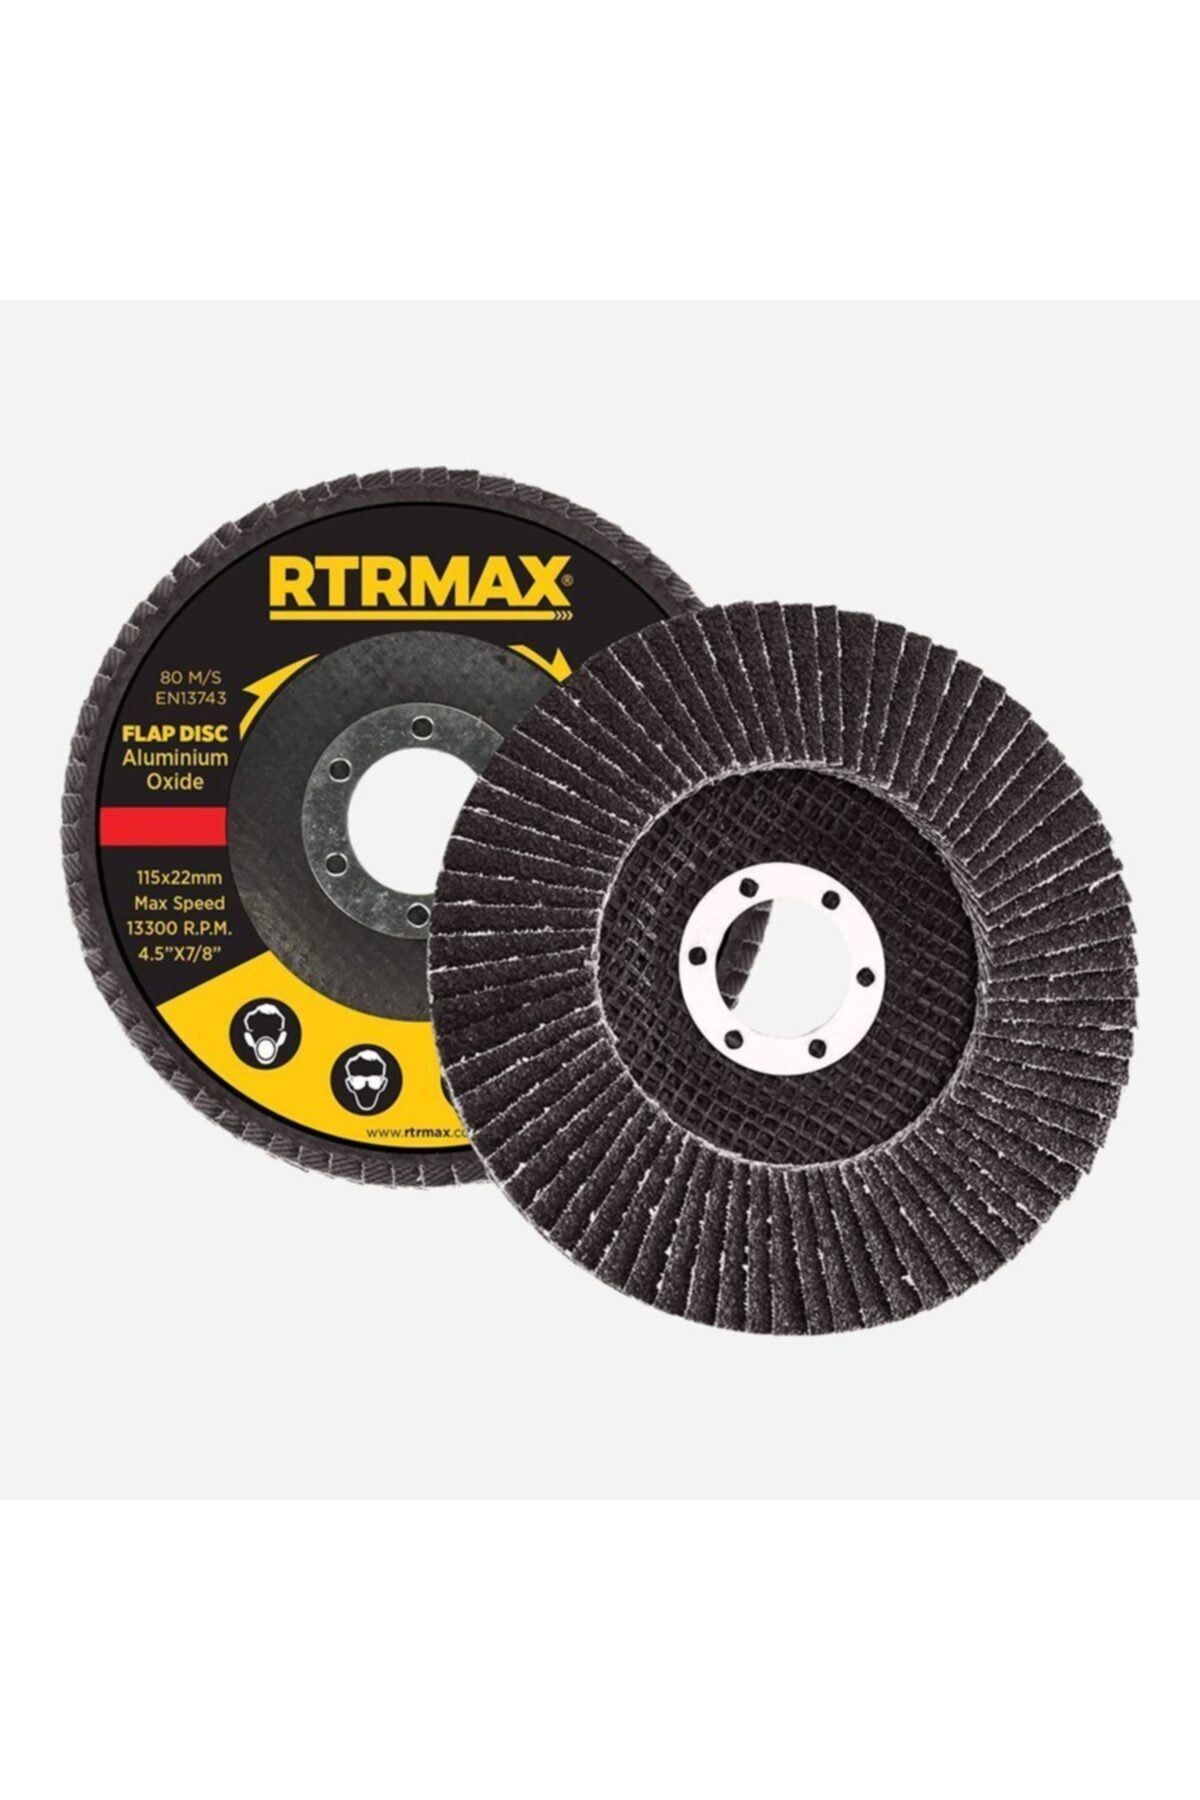 Rtrmax Rdf11540 Flap Disk Zımpara 115 Mm 40 Kum